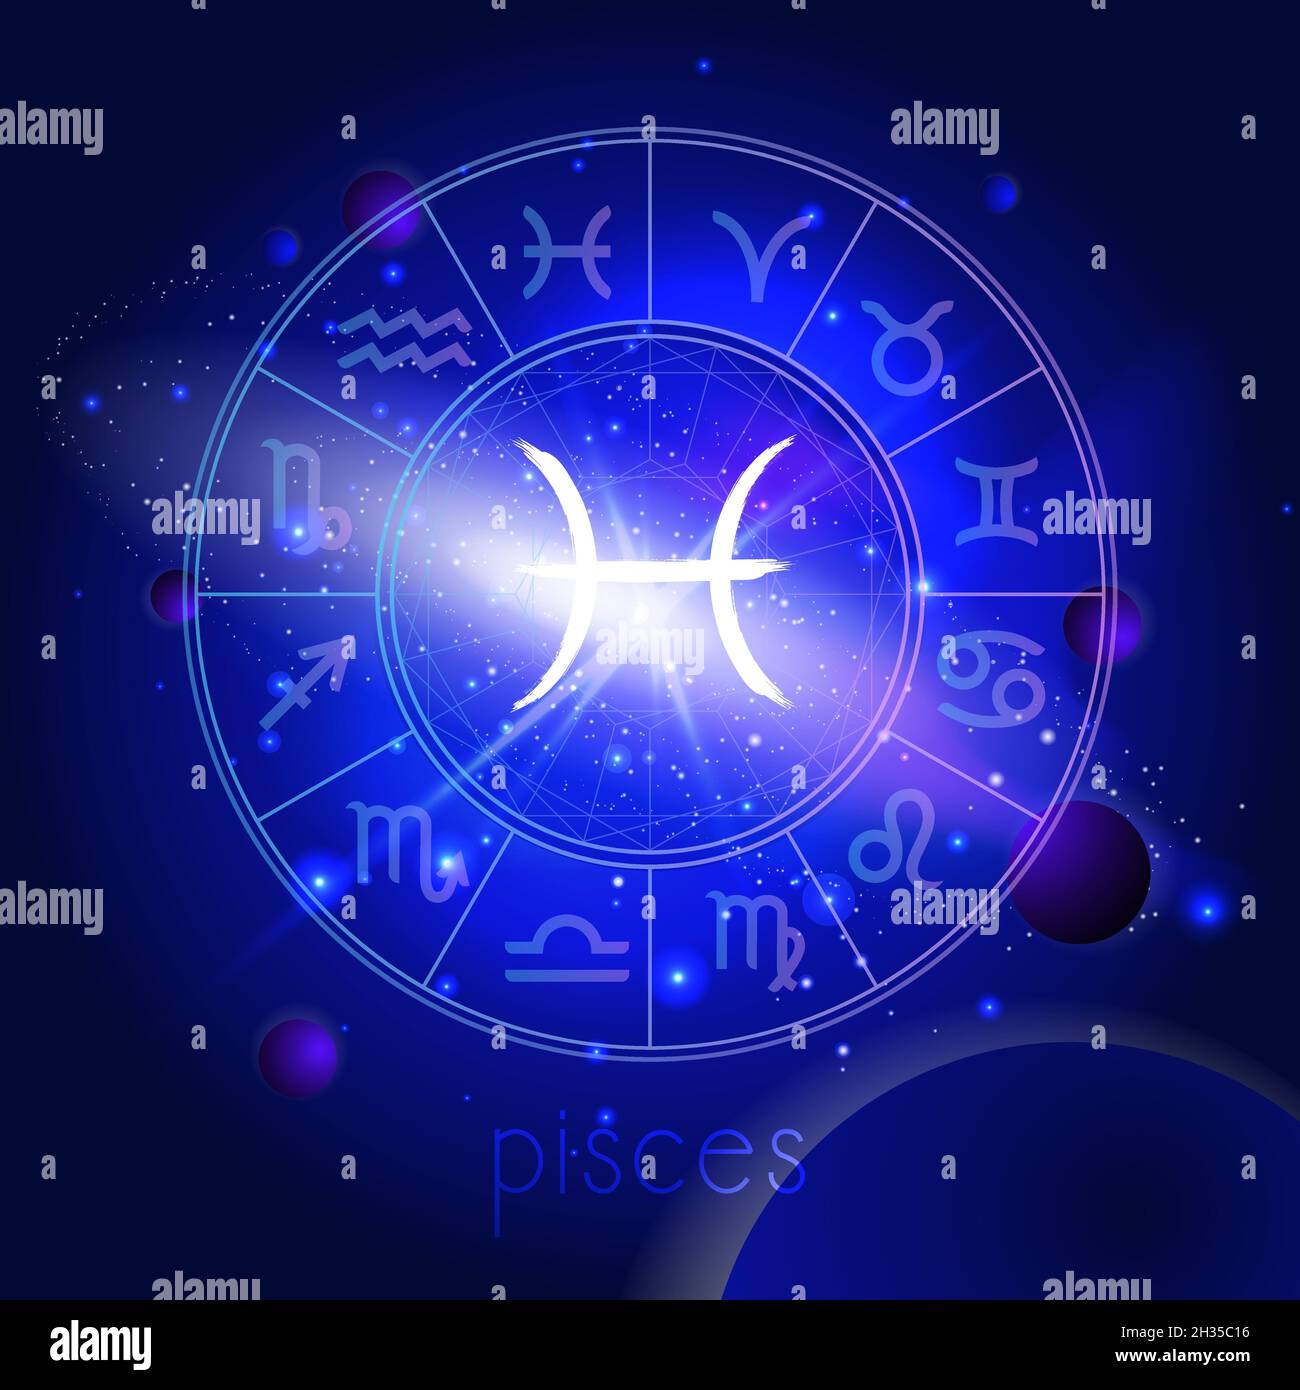 Vektor-Illustration des Zeichens FISCHE mit Horoskopkreis vor dem Hintergrund des Raumes mit Planeten und Sternen. Heilige Symbole in blauen Farben. Stock Vektor